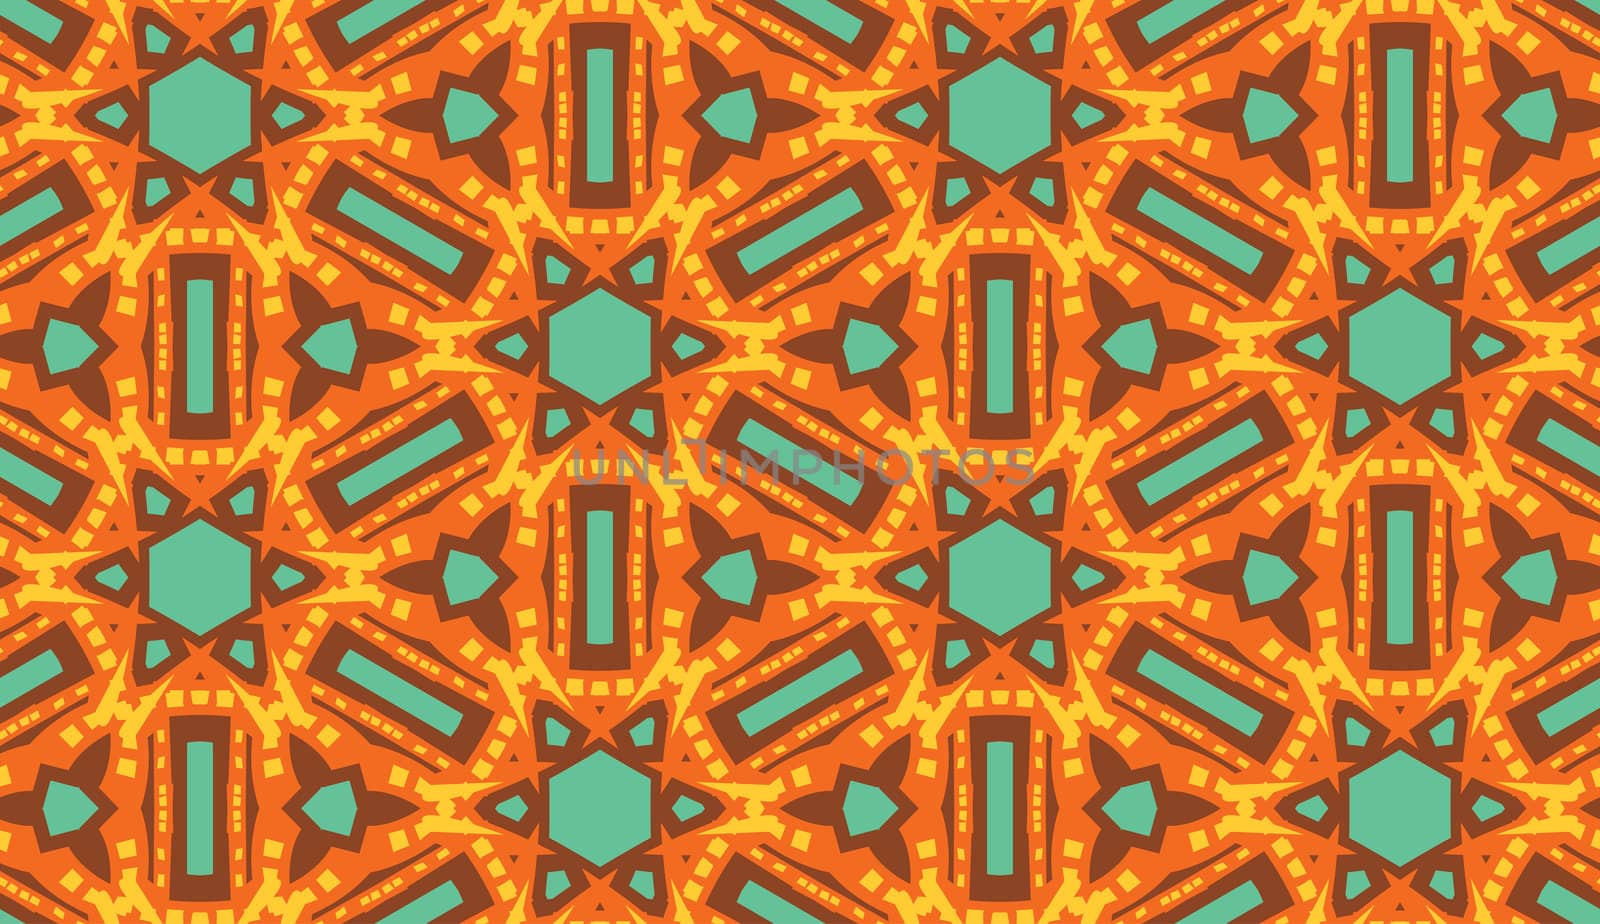 Arabic style seamless kaleidoscope wallpaper pattern in warm tones